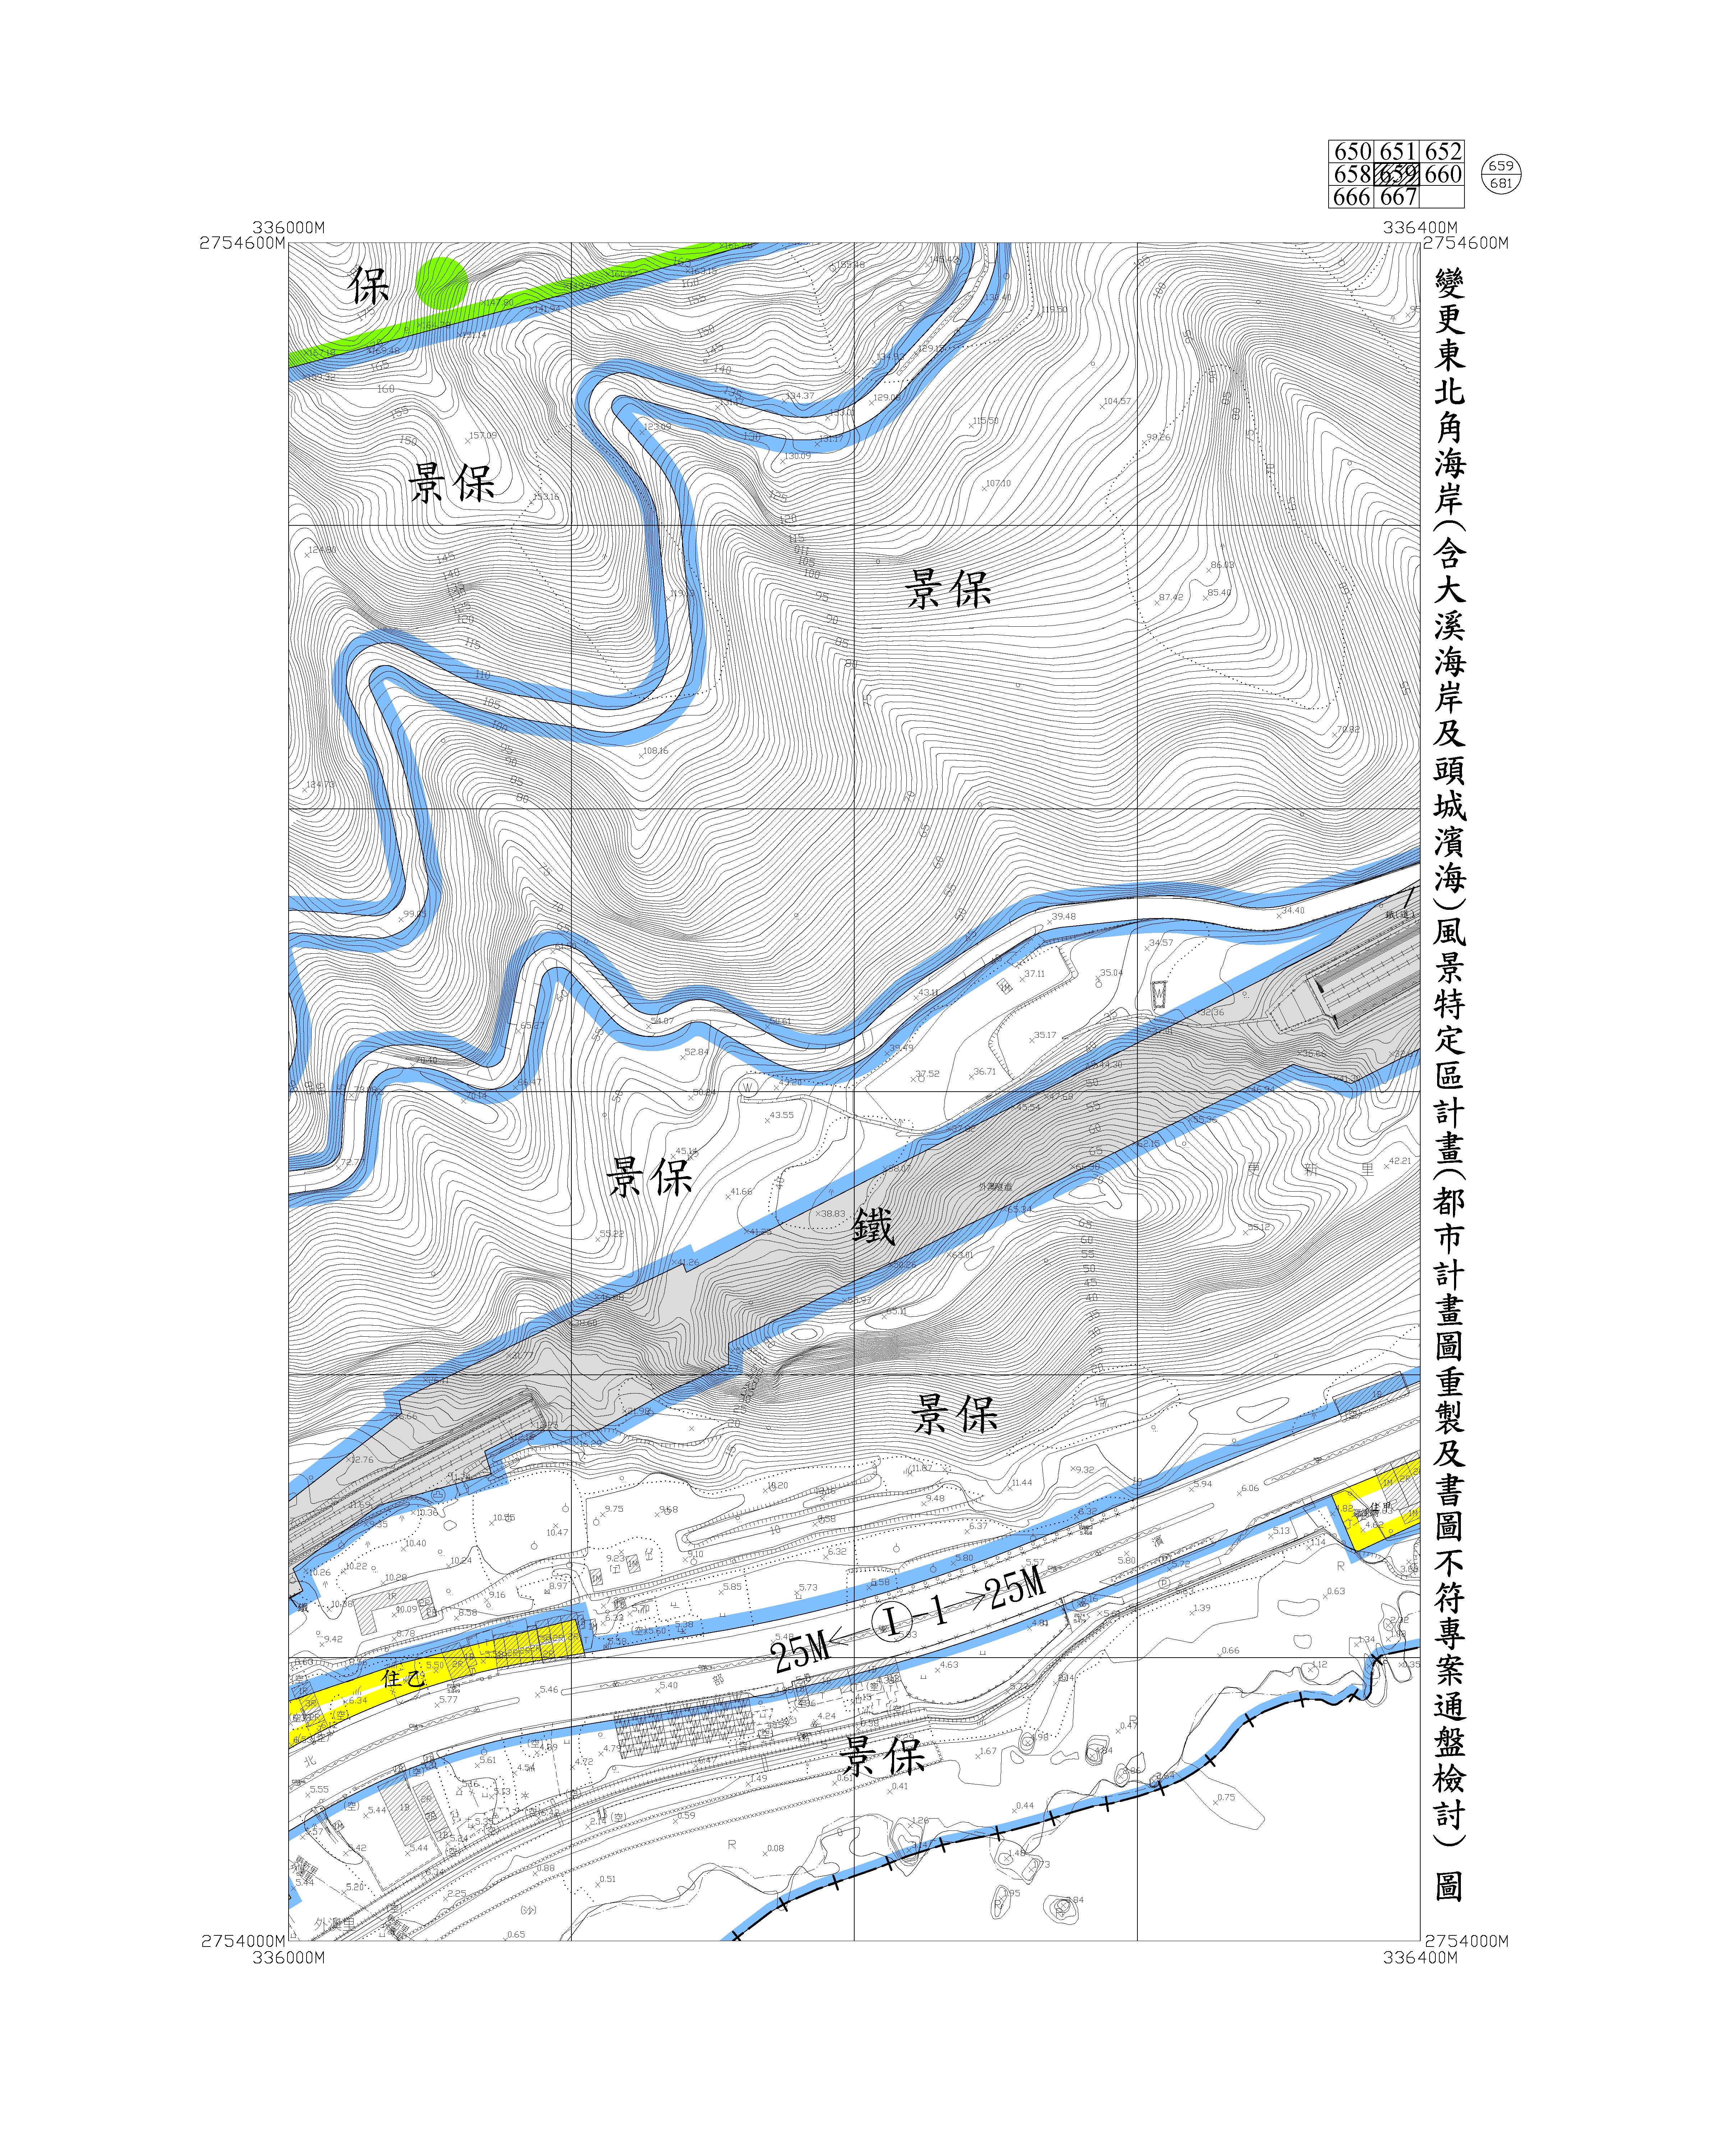 含大溪海岸及頭城濱海都市計畫圖重製及書圖不符專案通盤檢討圖資668